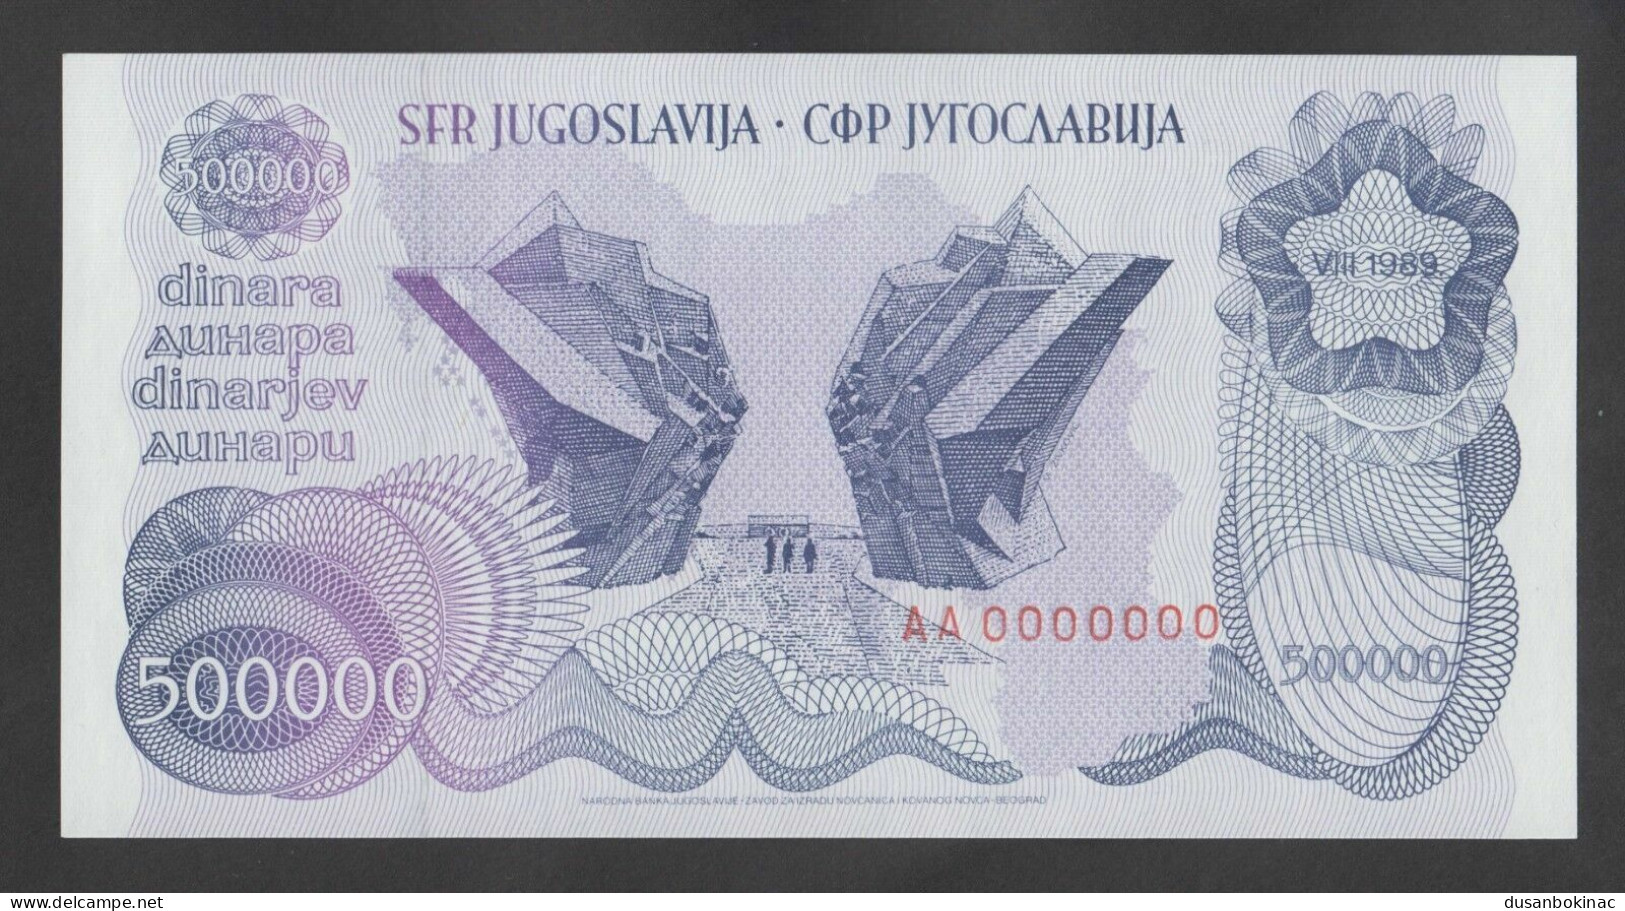 Yugoslavia 500 000 Dinara 1989. P-98s. SPECIMEN, ZERO SERIAL NUMBER. UNC - Specimen